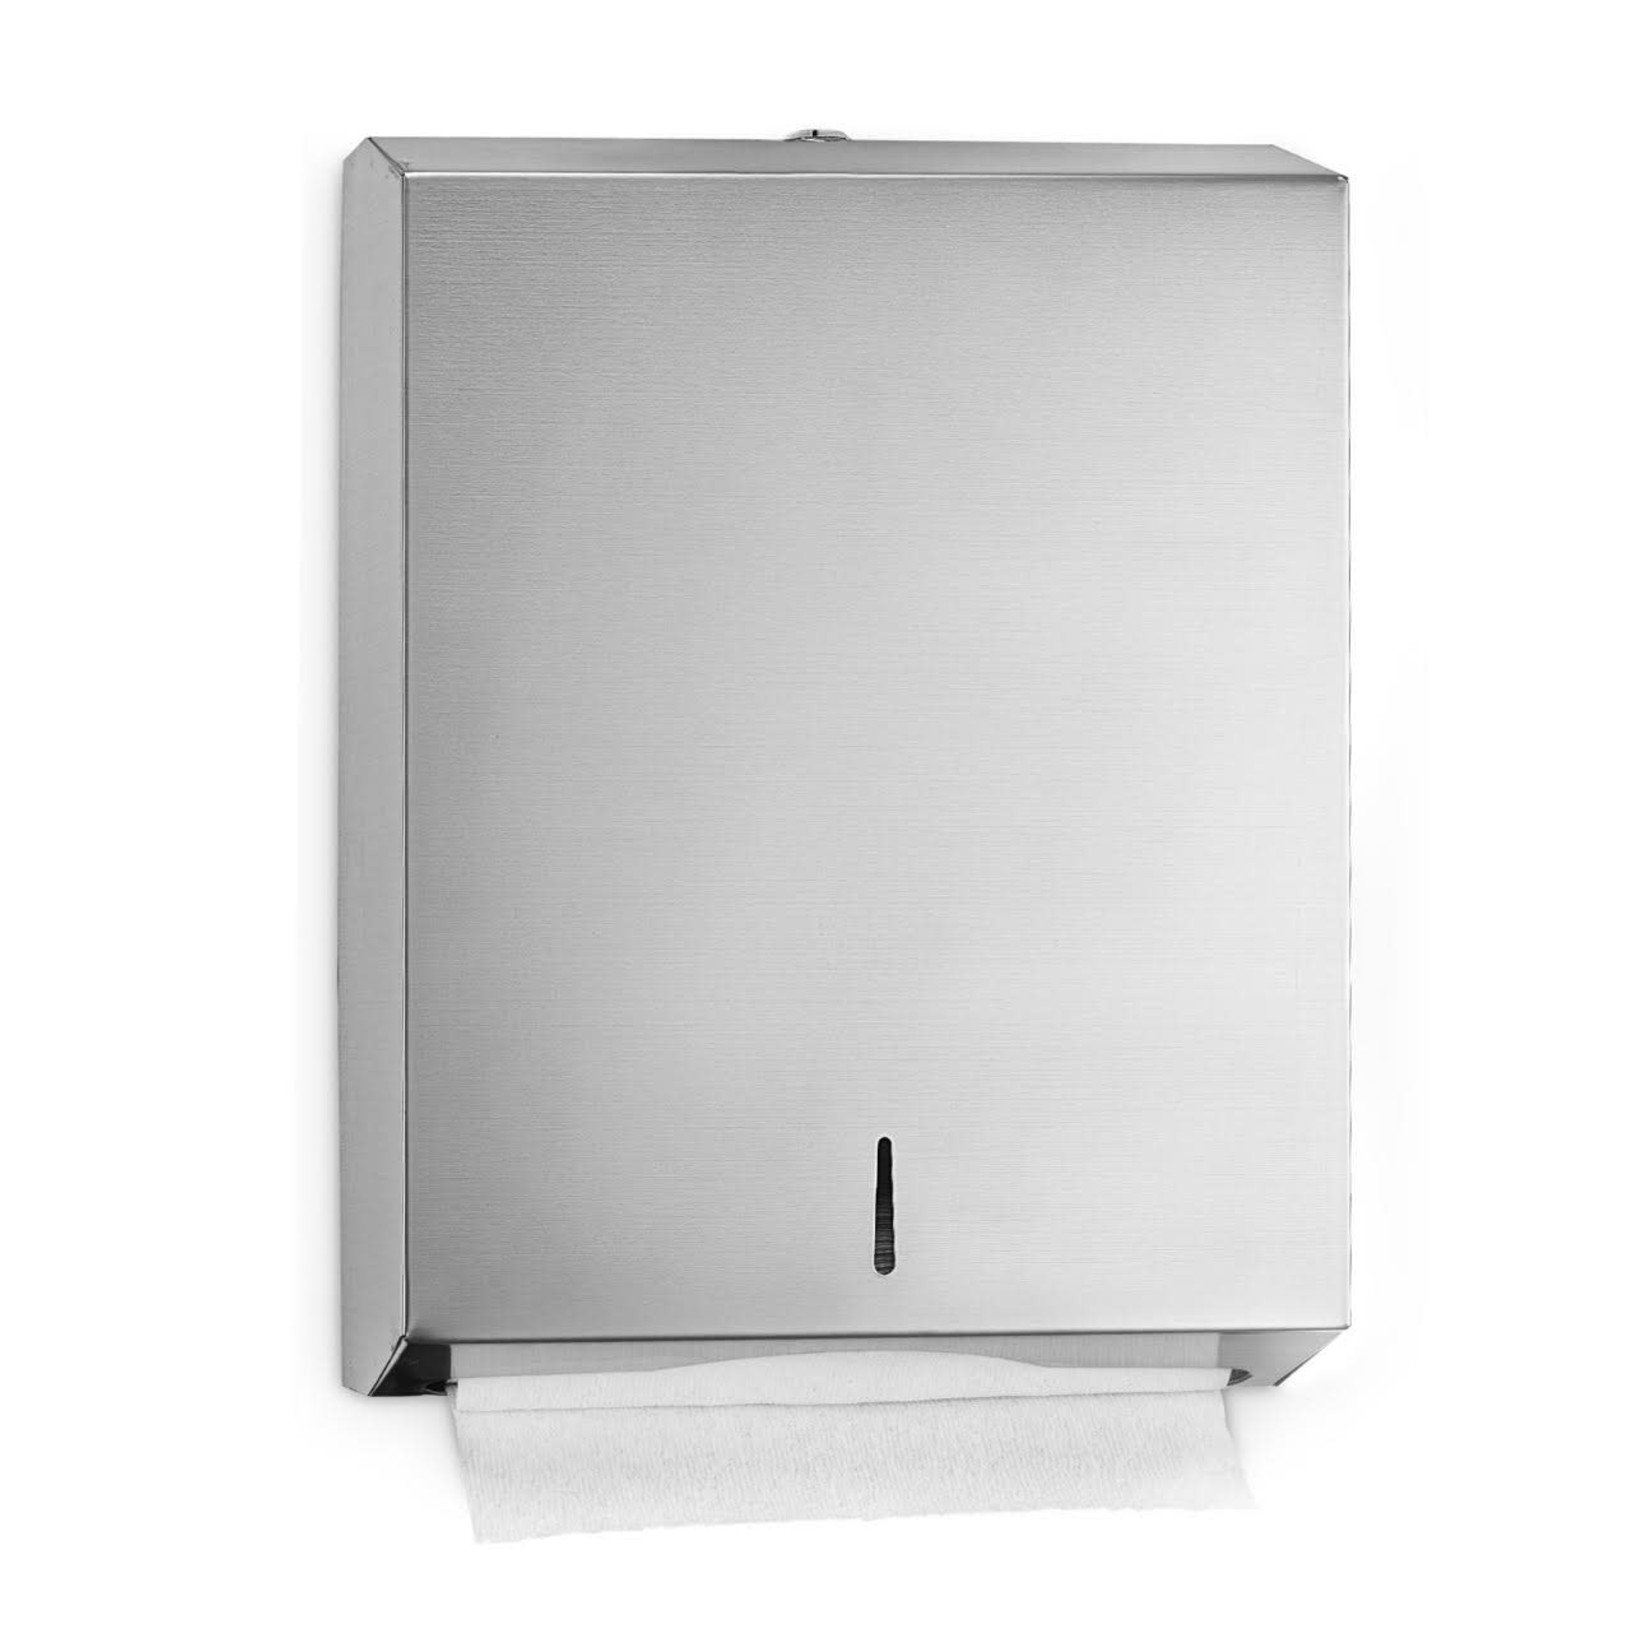 12541 Stainless Steel Towel Dispenser